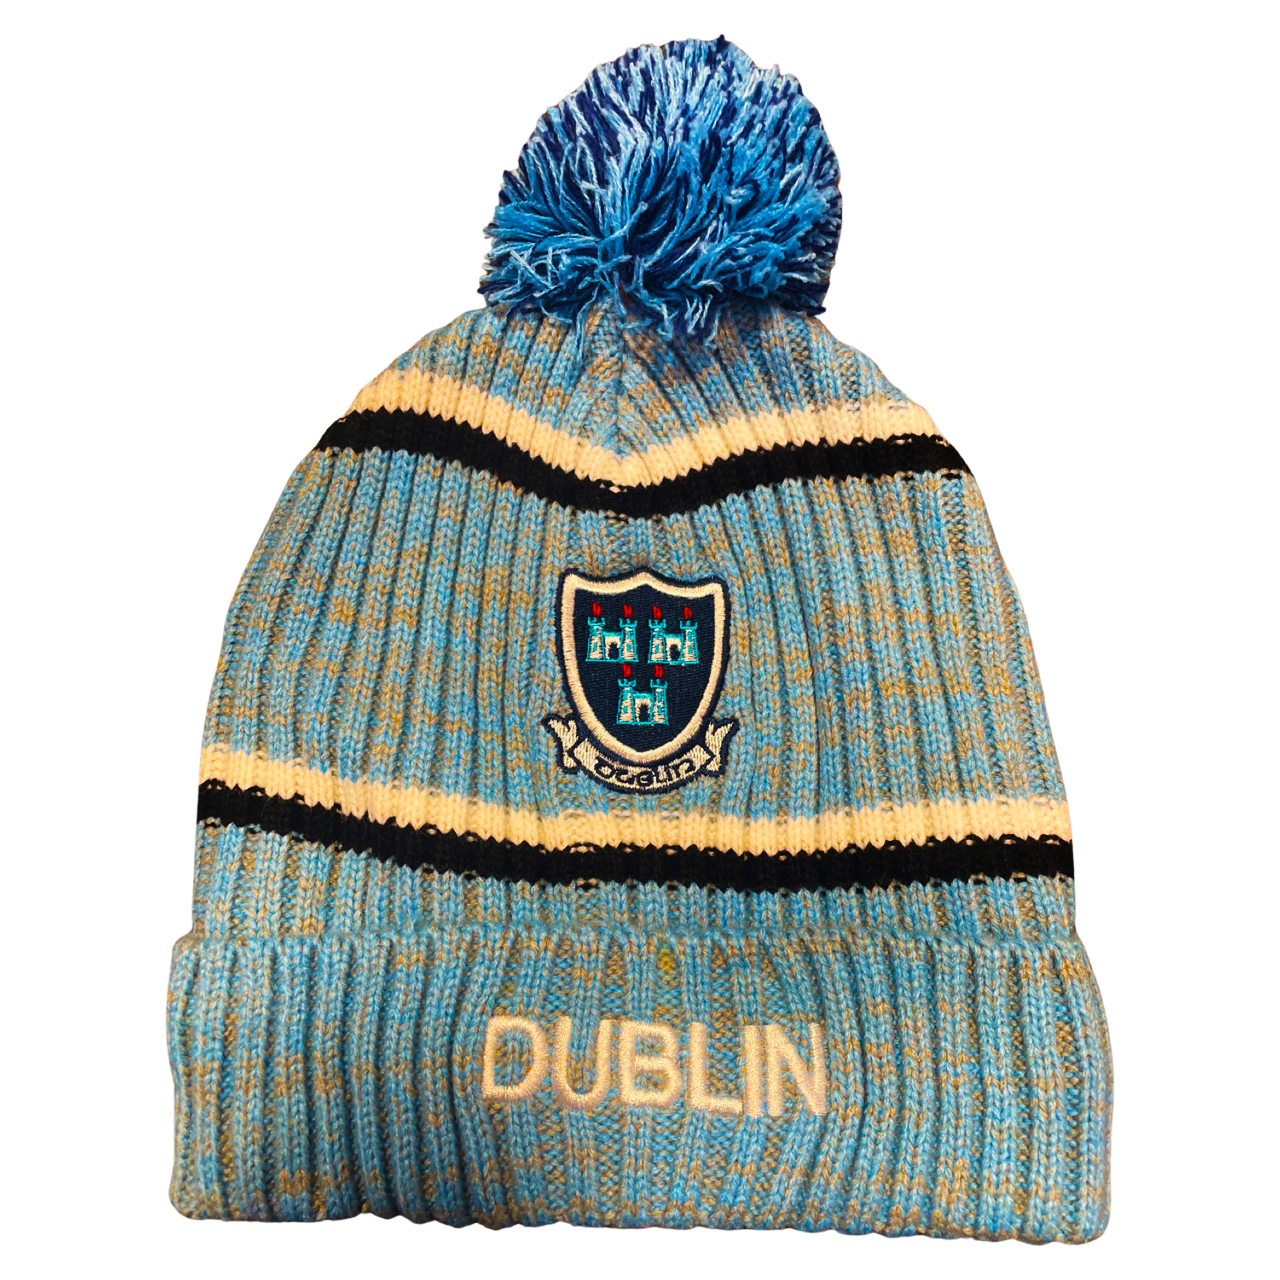 Dublin Bobble Hat